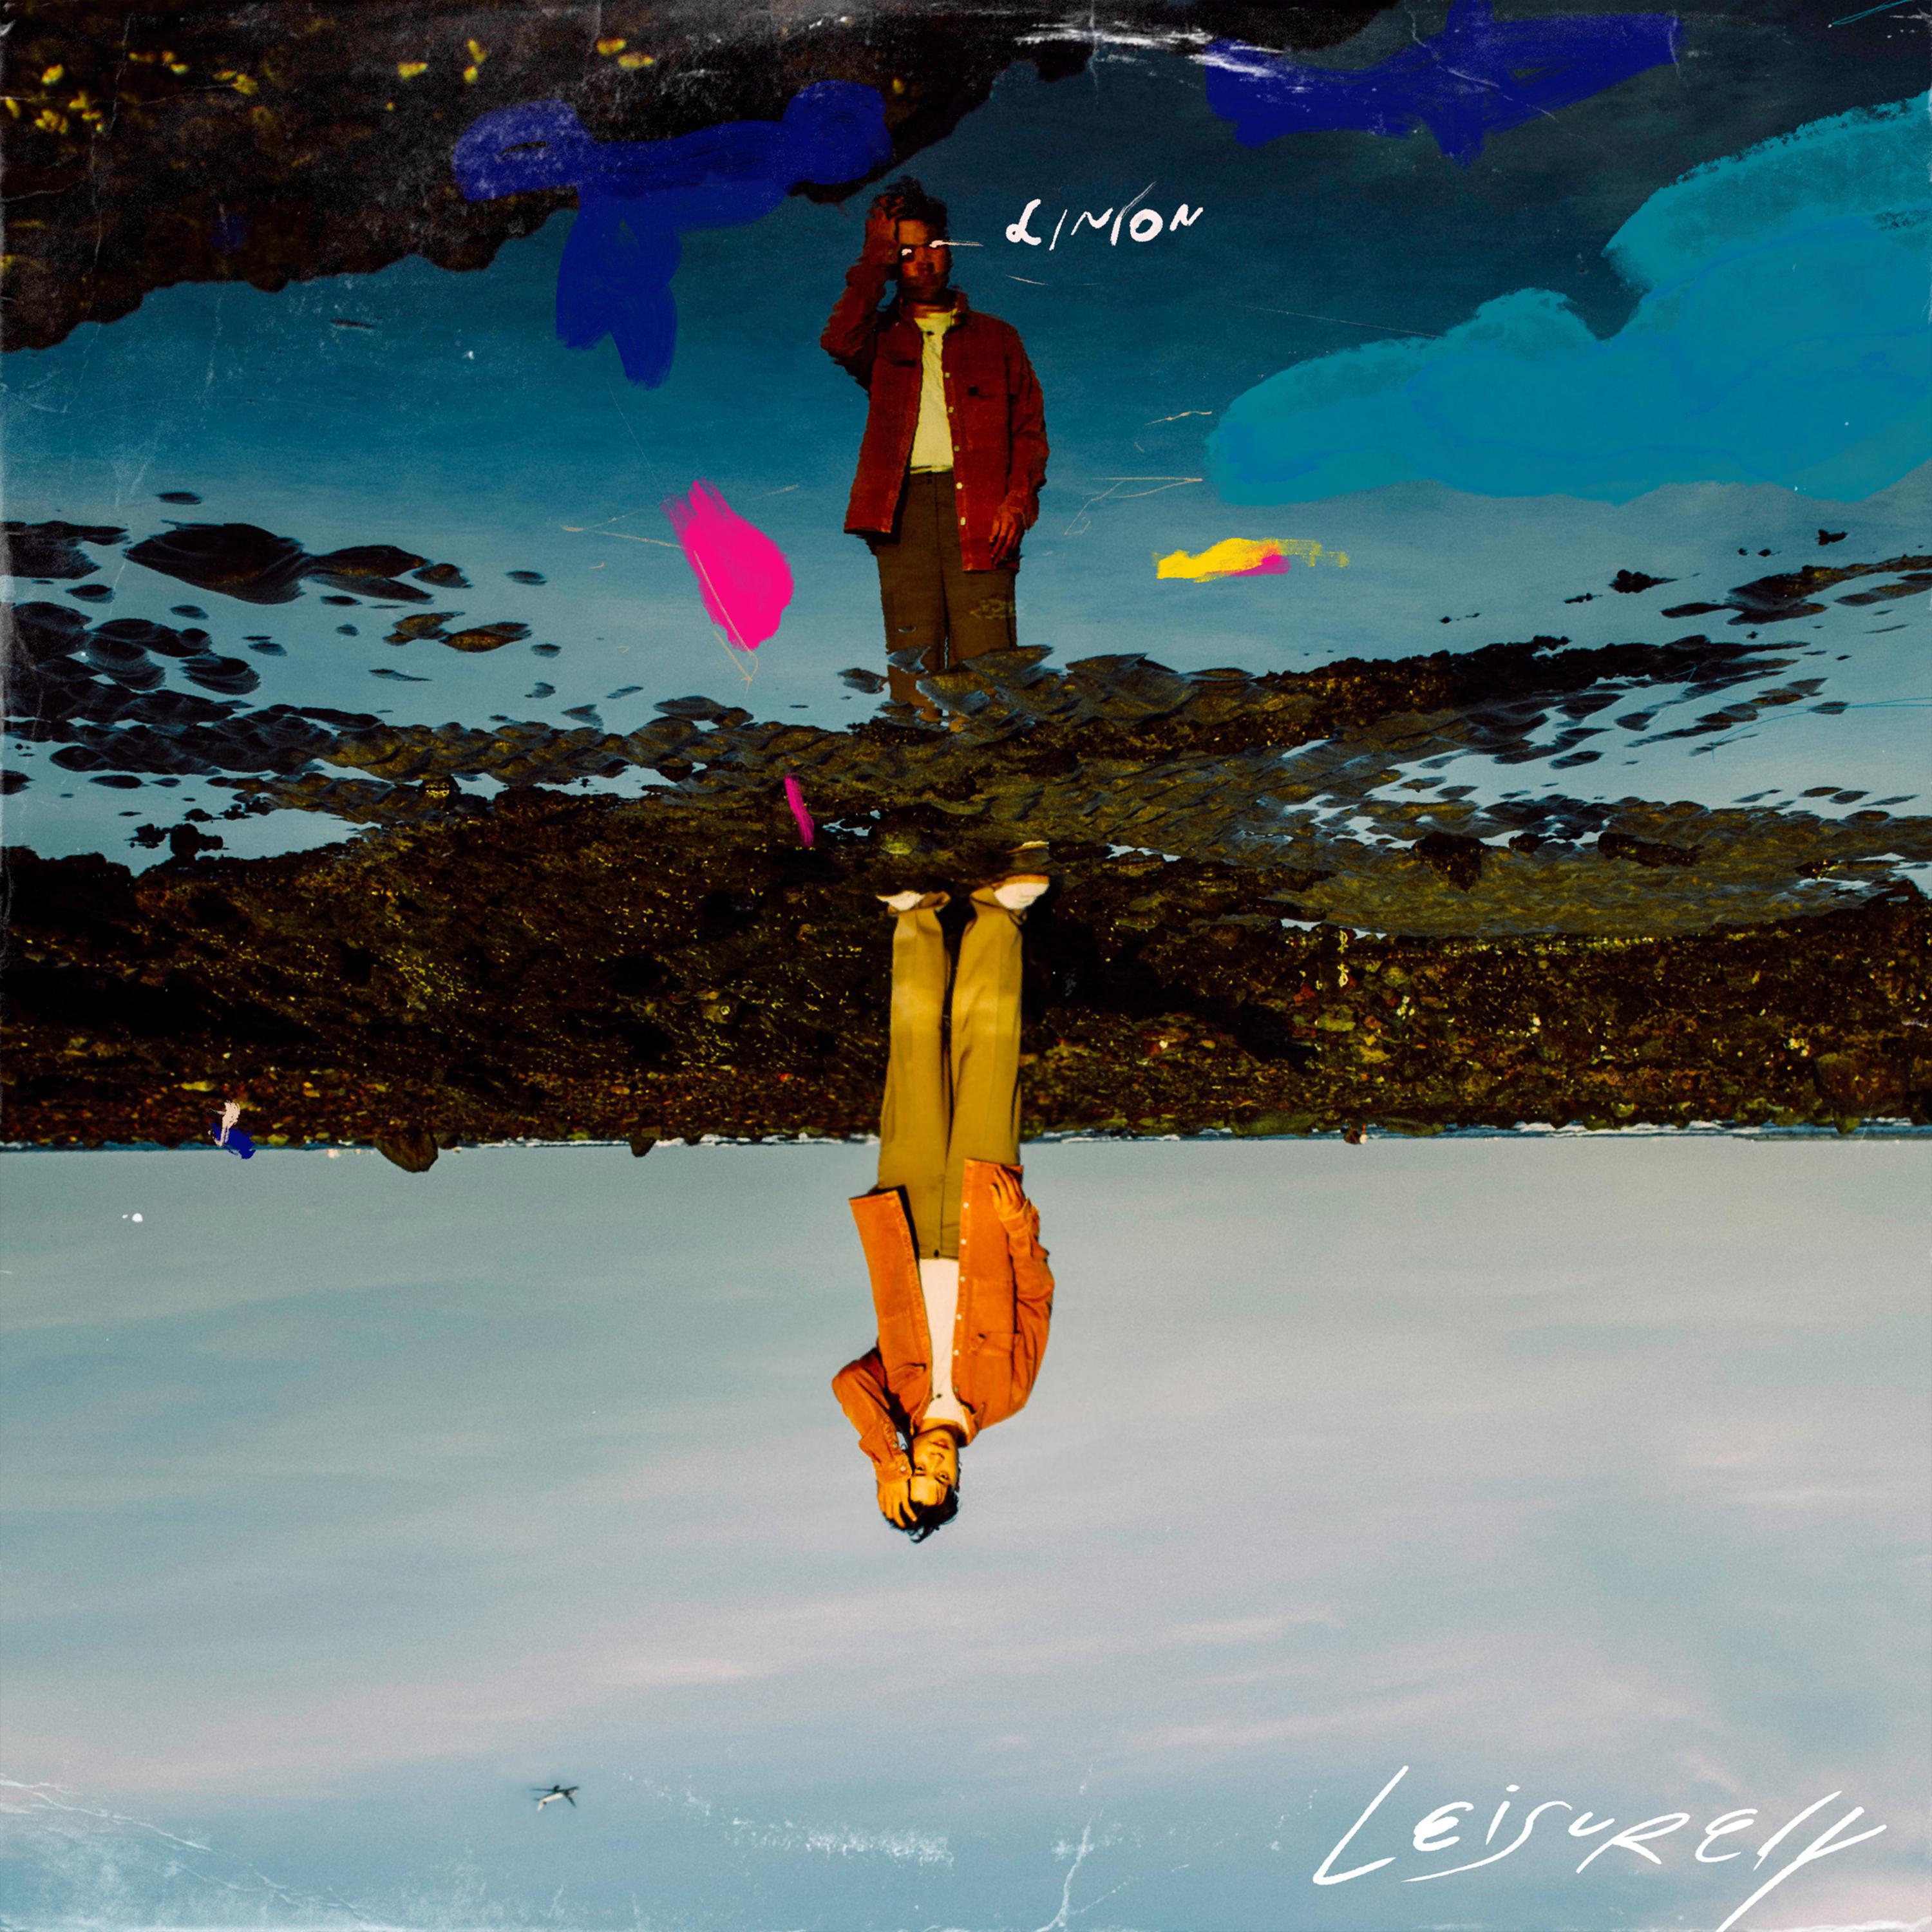 Cocoon歌词 歌手LINION / 郑敬儒-专辑Leisurely-单曲《Cocoon》LRC歌词下载